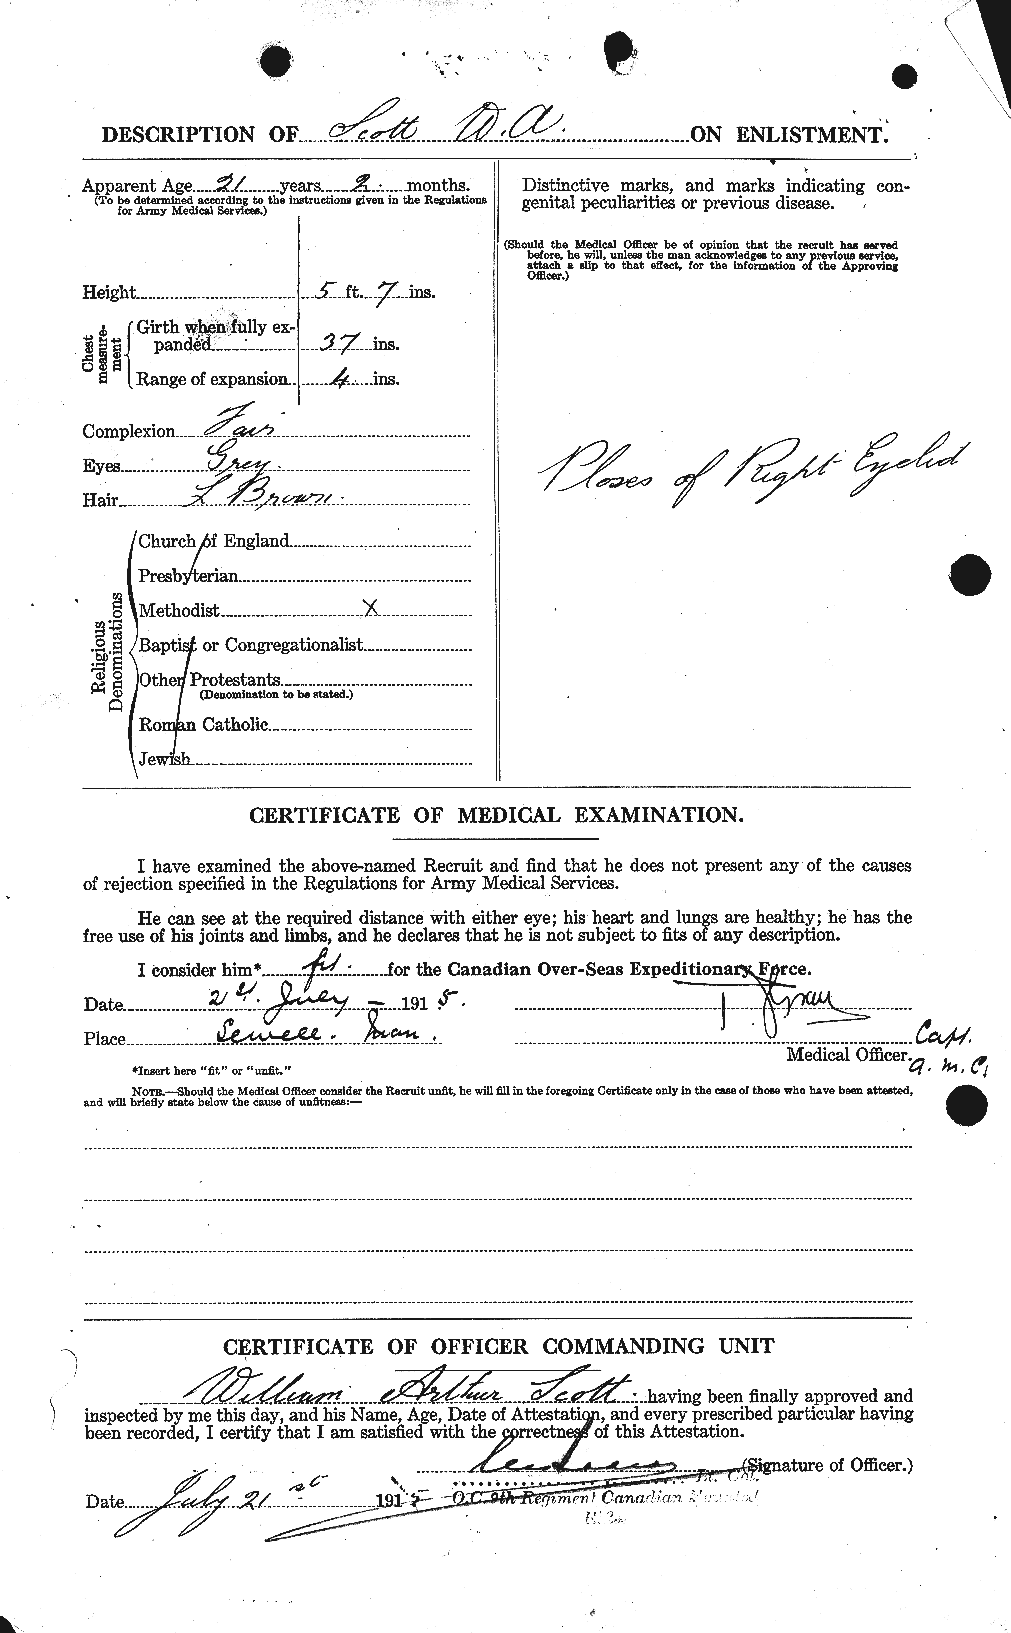 Dossiers du Personnel de la Première Guerre mondiale - CEC 087327b